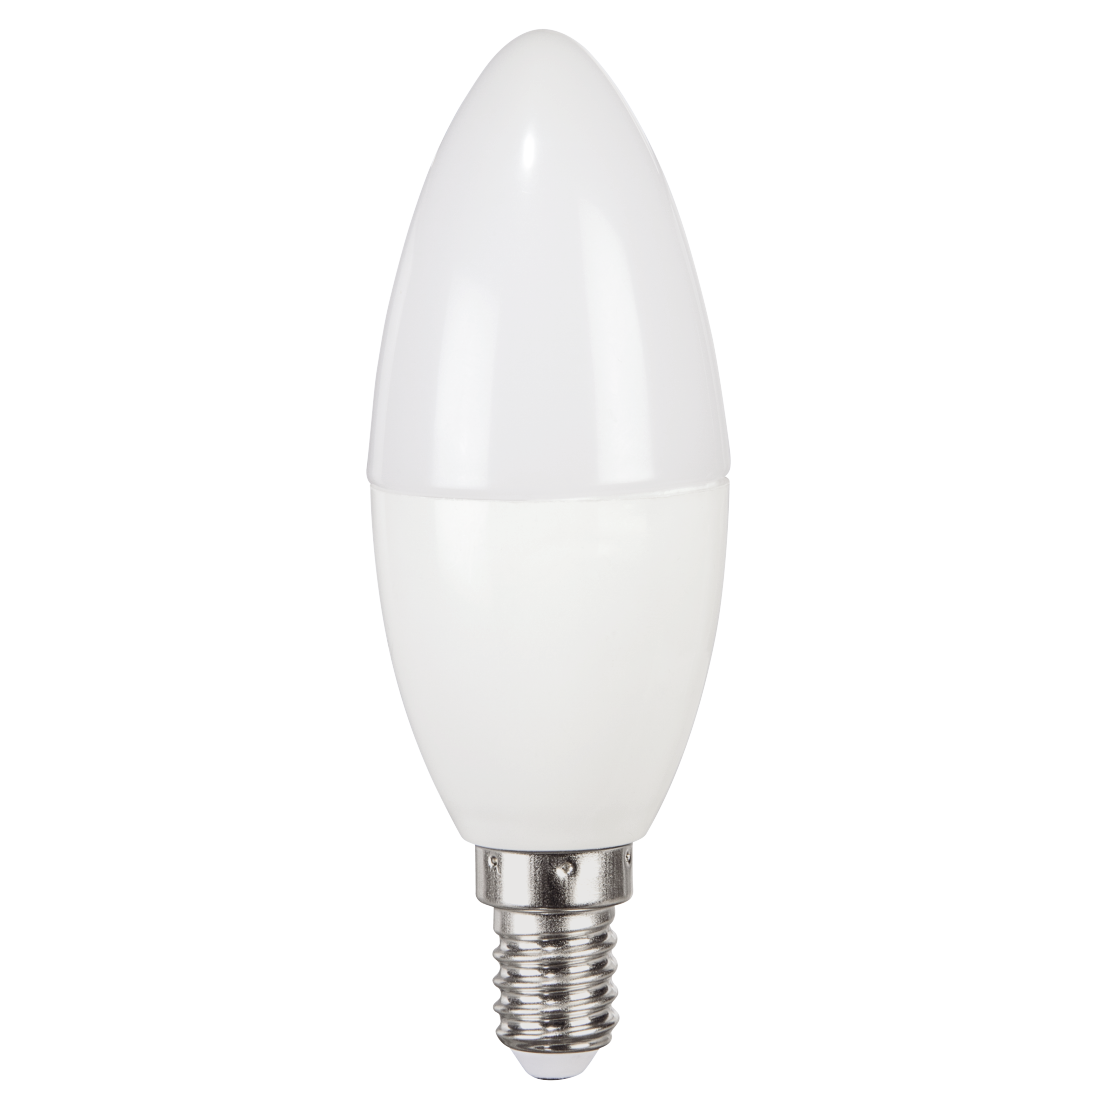 abx Druckfähige Abbildung - Xavax, LED-Lampe, E14, 470lm ersetzt 40W, Kerzenlampe, Neutralweiß